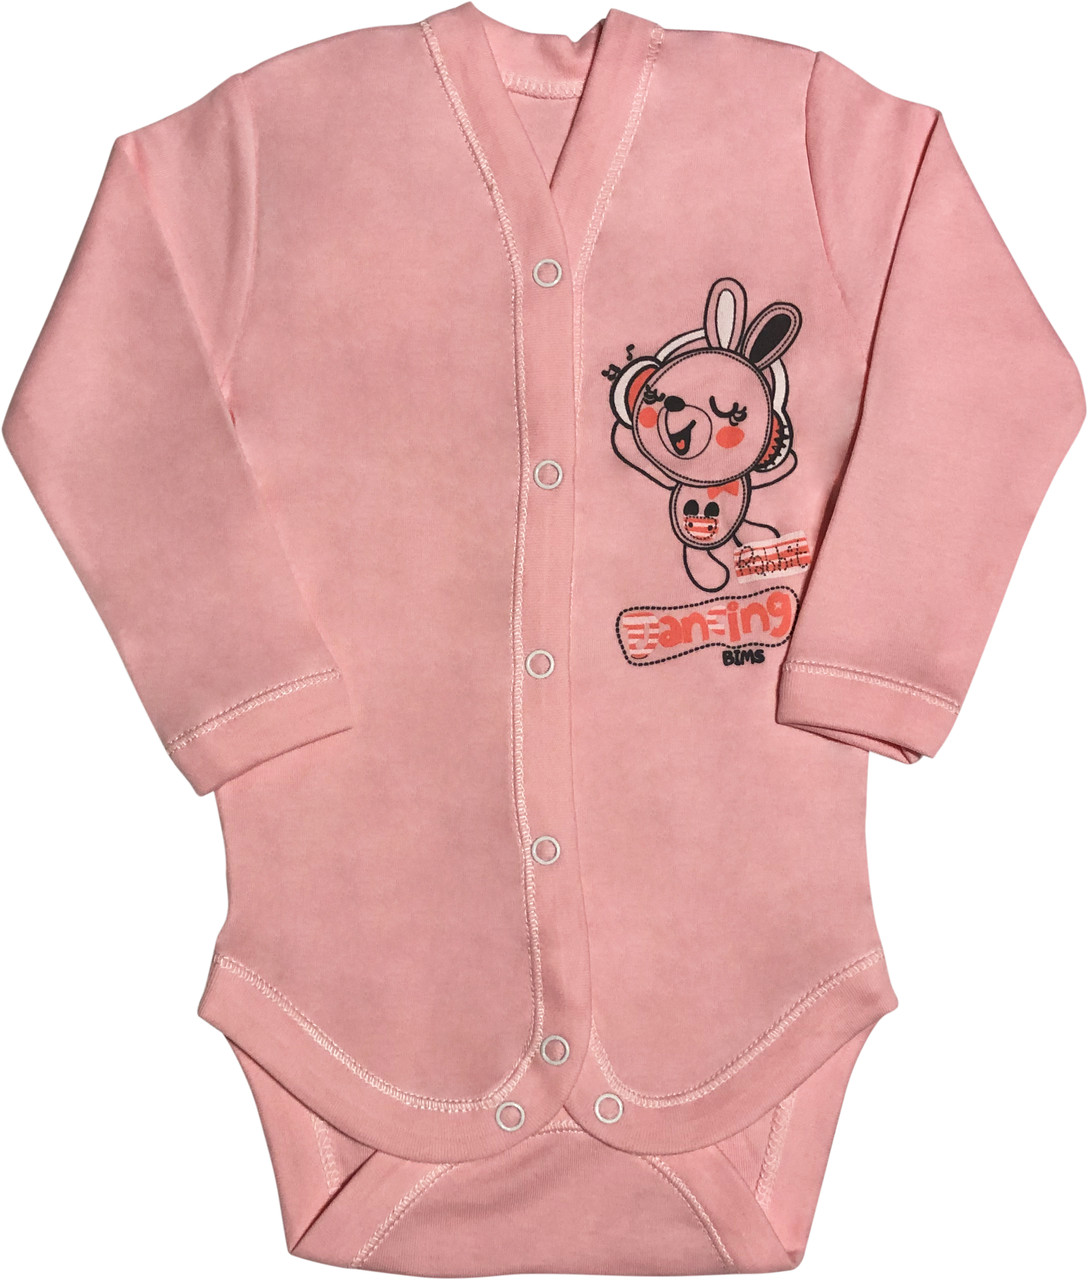 Дитячий боді ріст 74 6-9 міс інтерлок рожевий на дівчинку з довгим рукавом для новонароджених Р-334